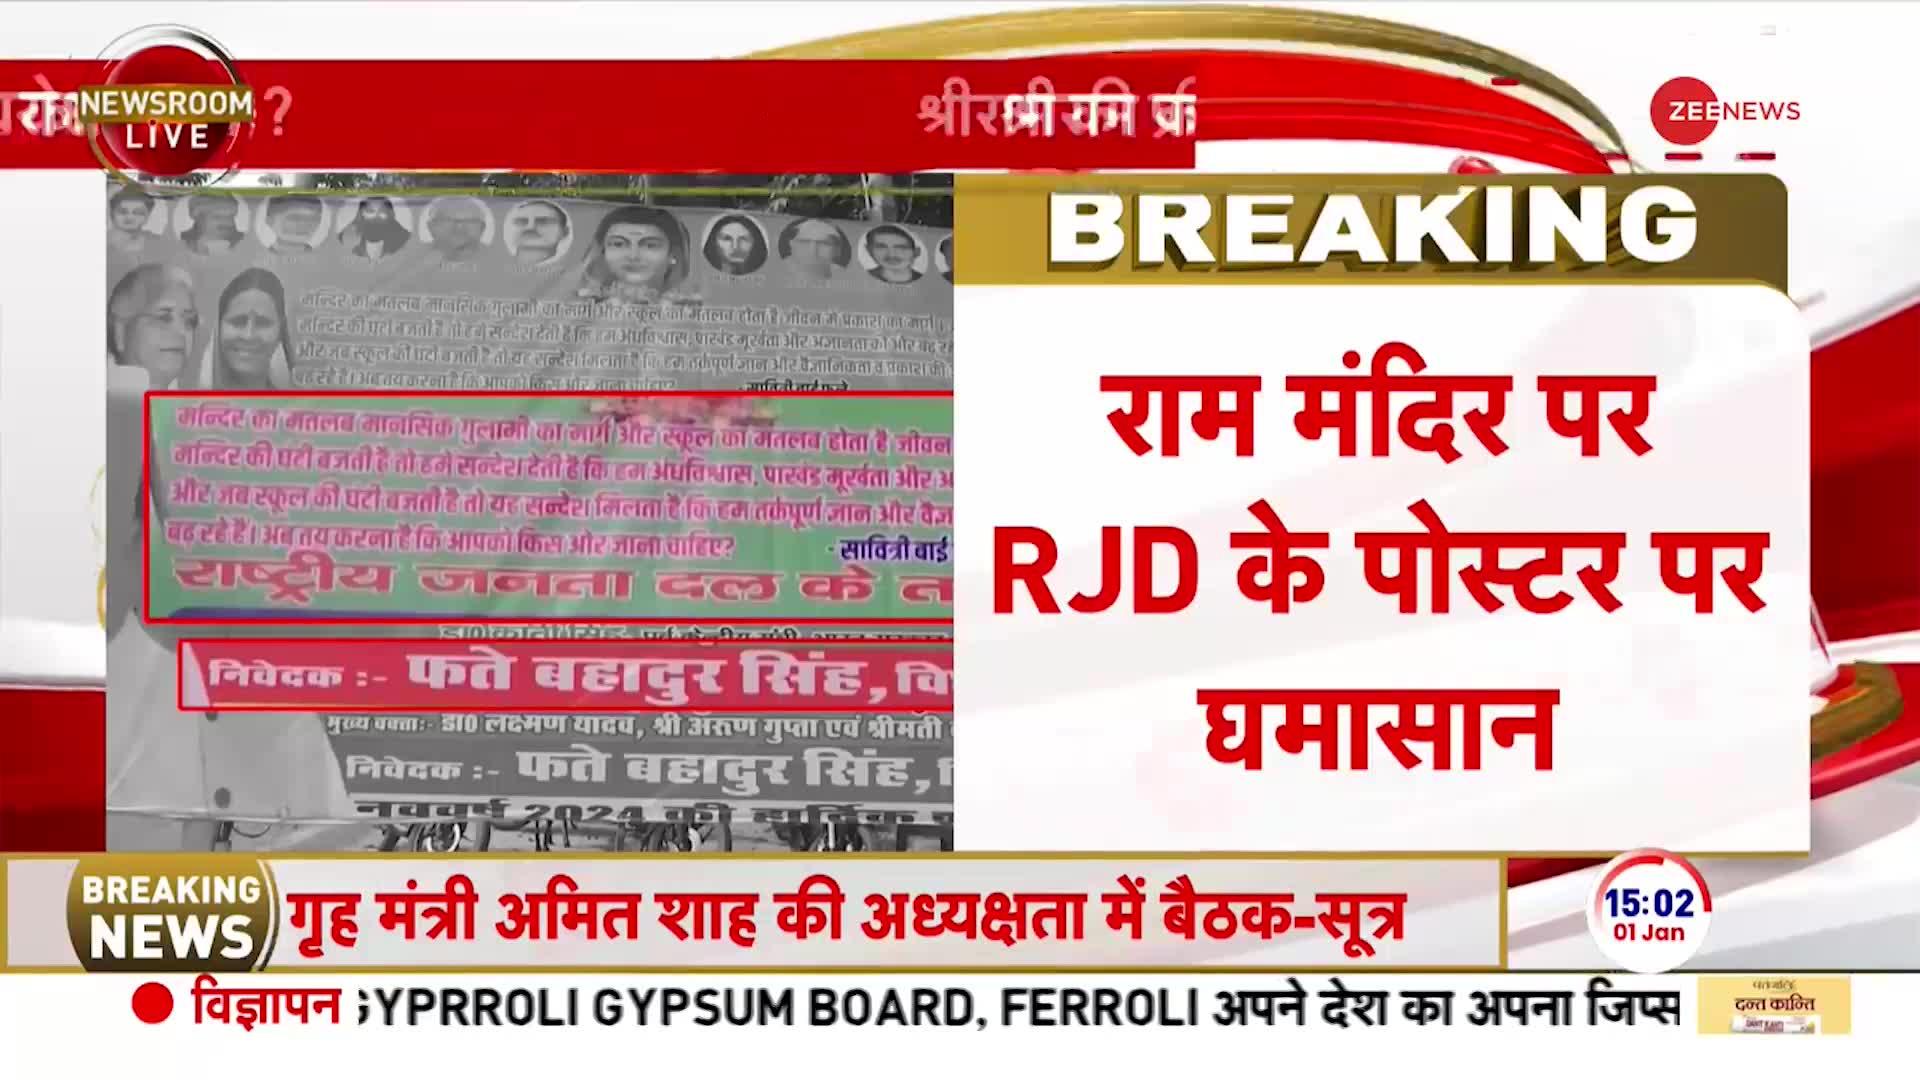 RJD Poster on Ram Mandir: श्रीराम की प्राण प्रतिष्ठा, RJD को नापसंद ?